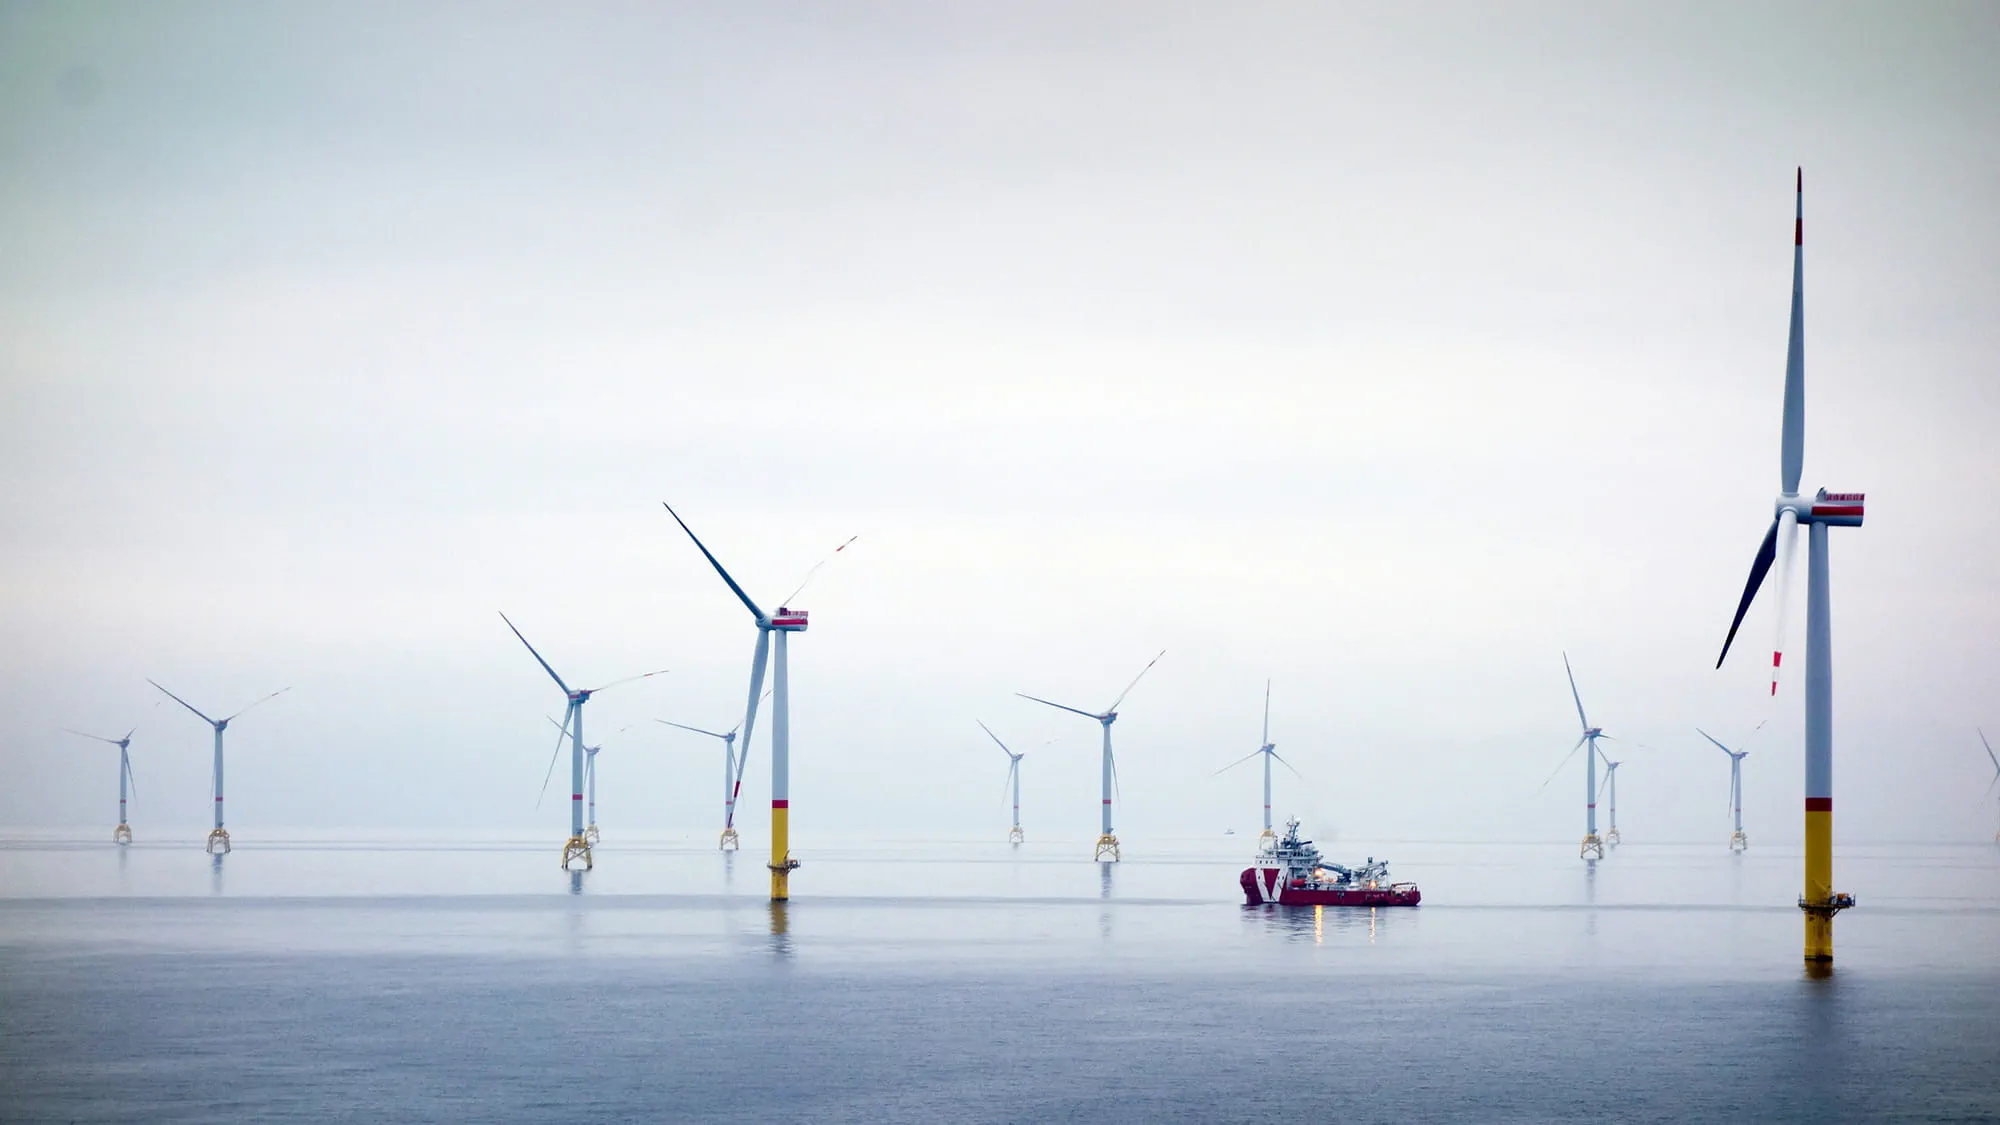 Offshore wind turbines in the ocean